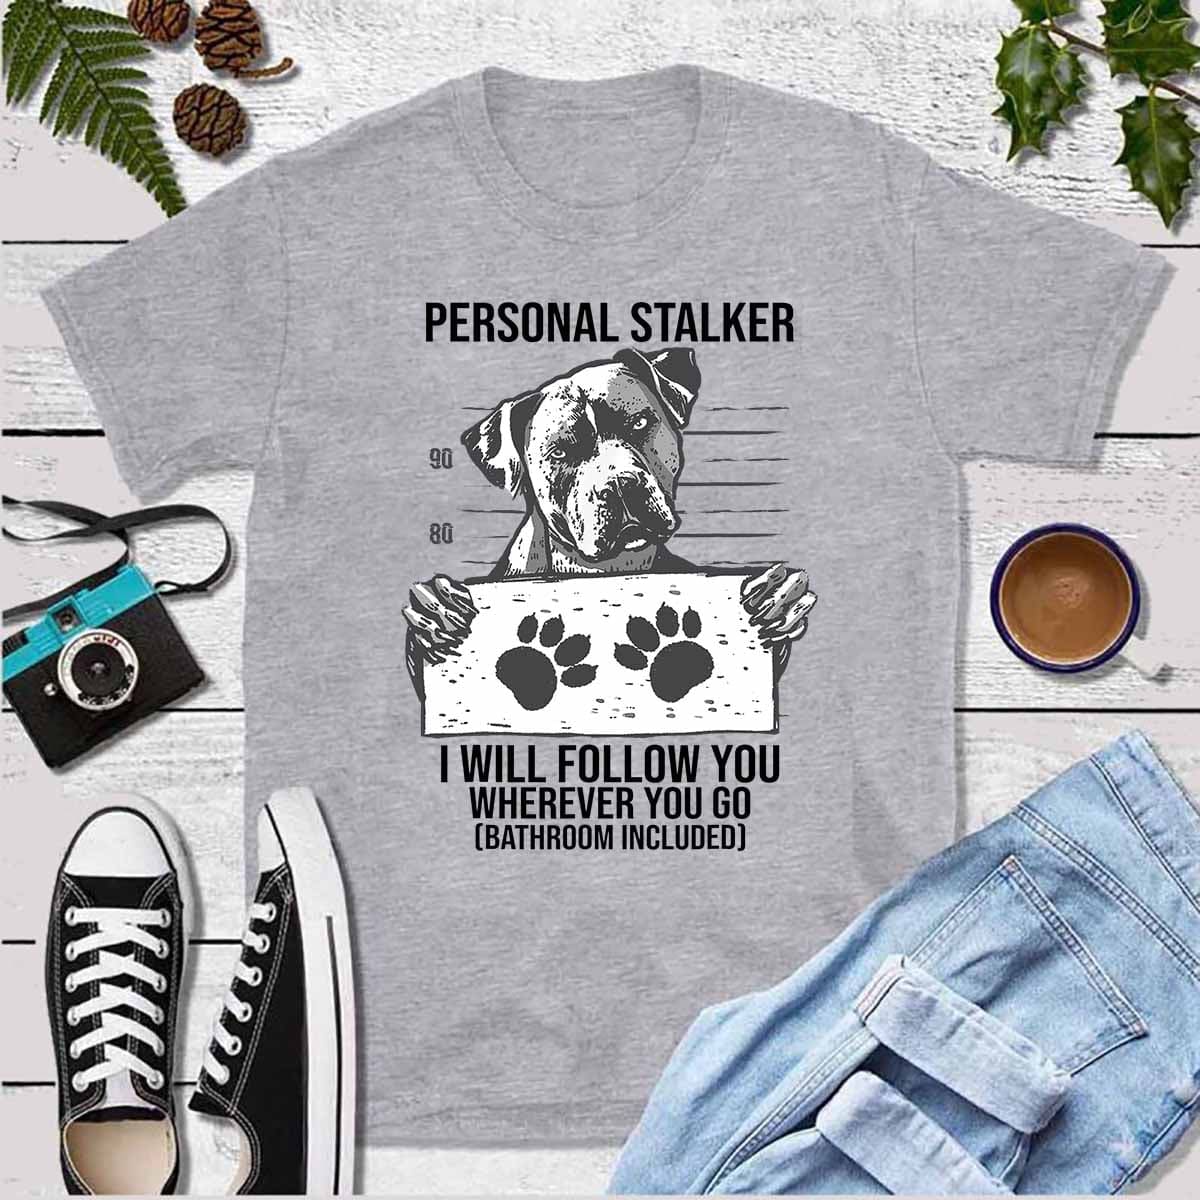 Personal stalker - Pitbull dog, Pitbull stalker, gift for dog person